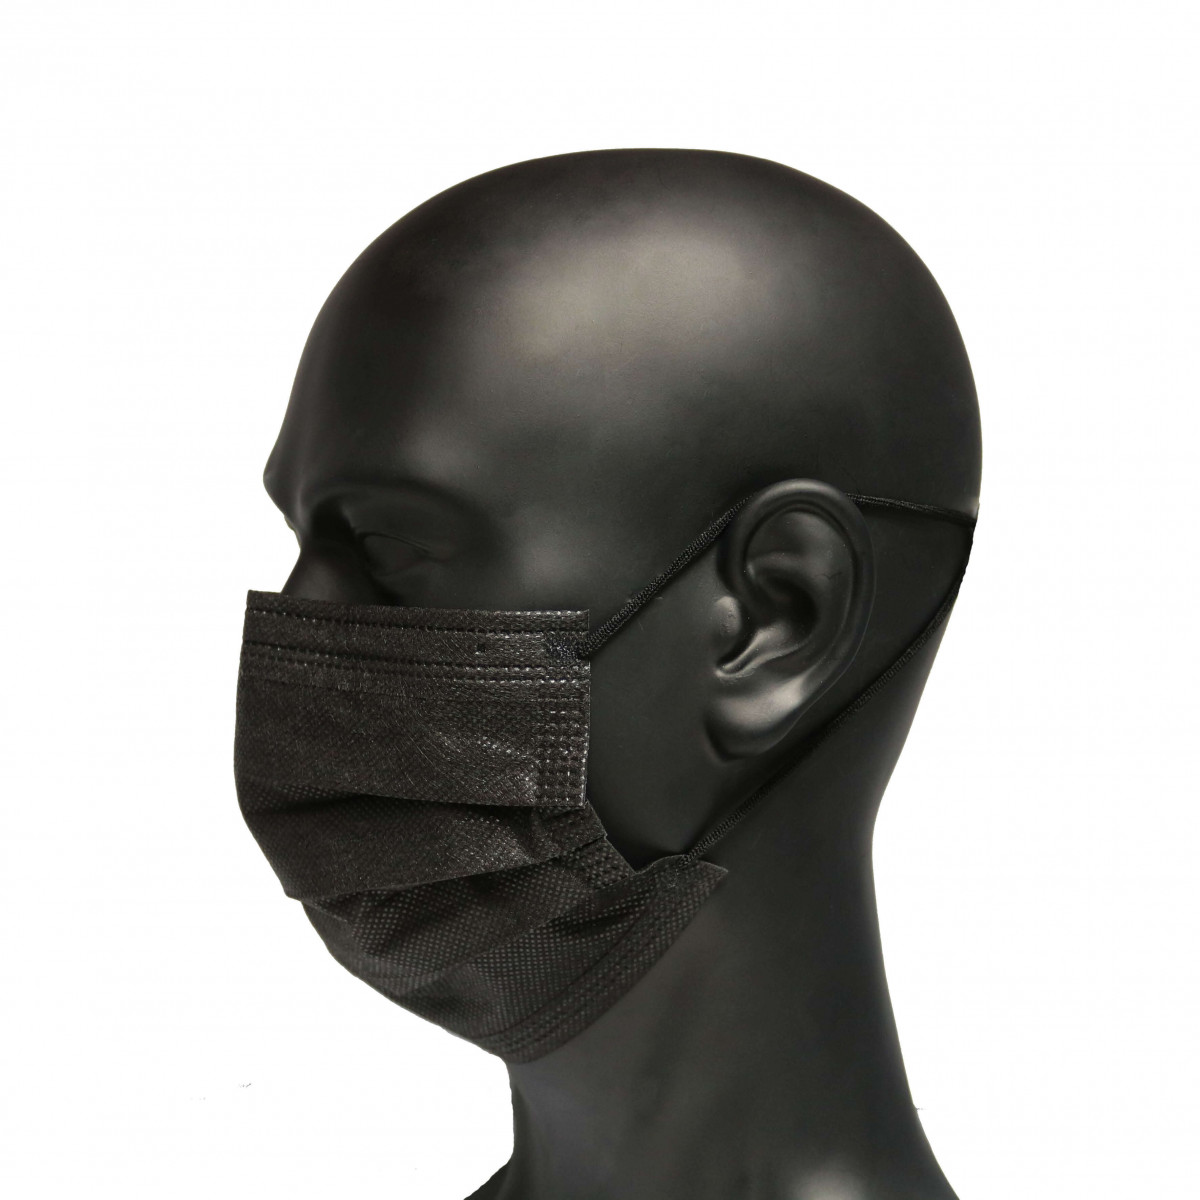 Masque jetable noir : masque chirurgical noir livraison rapide